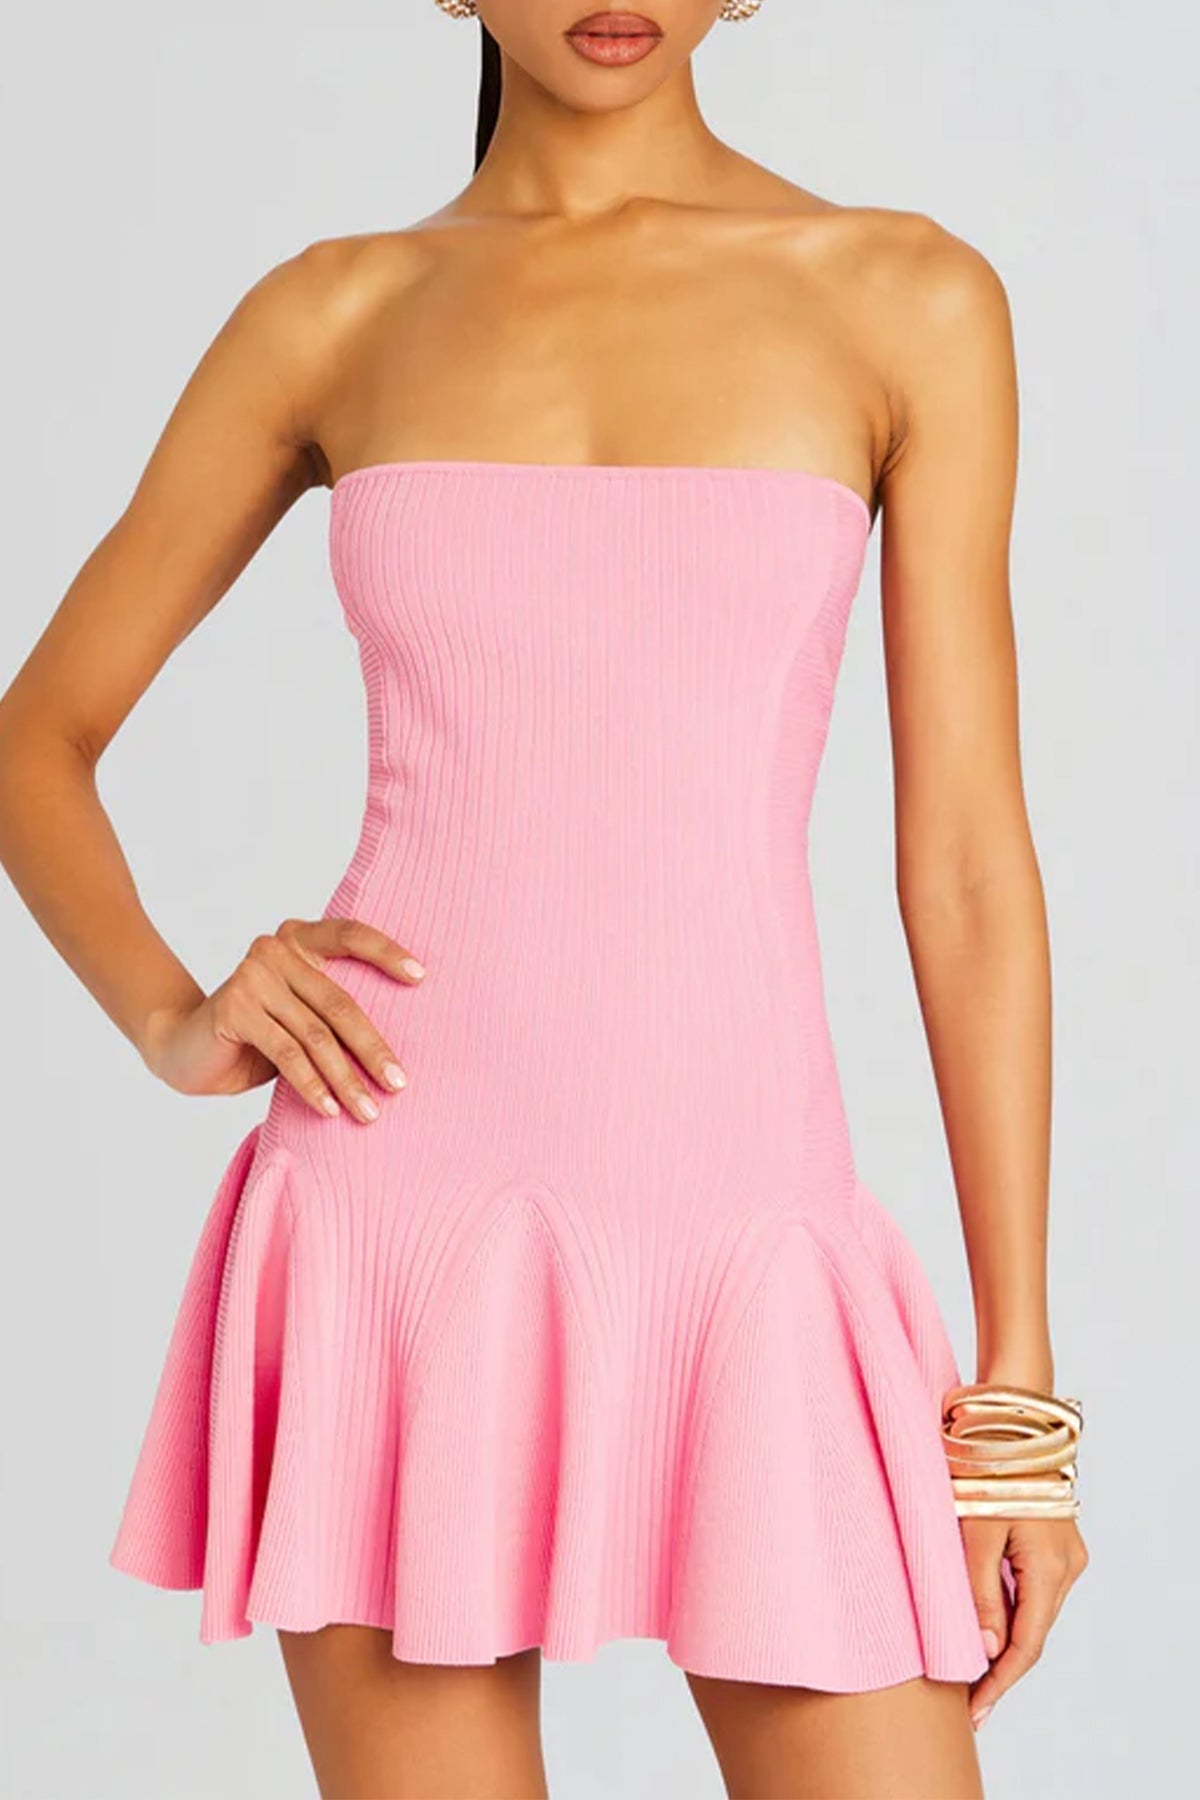 Annina Knit Dress in Metallic Pink - shop - olivia.com